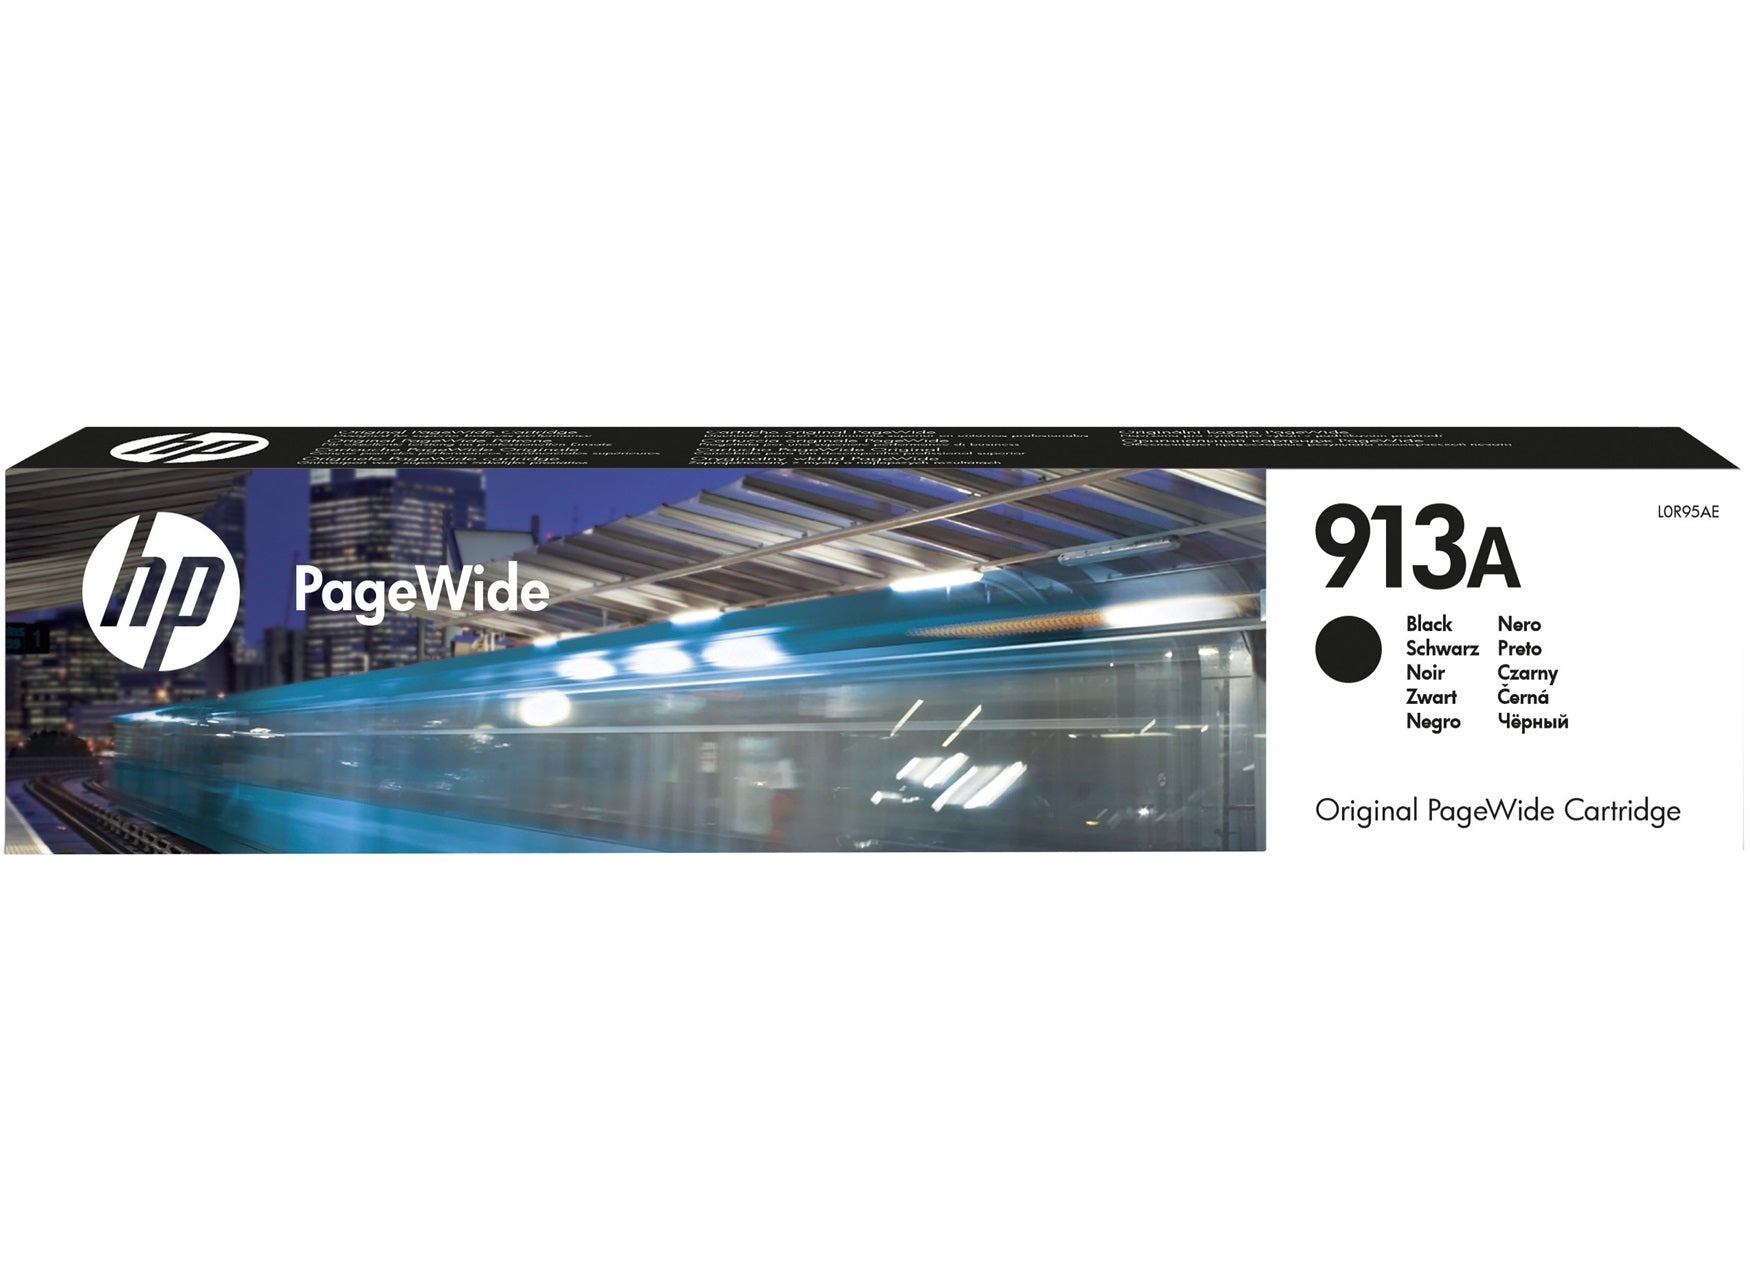 HP 913A Black Original Pagewide Ink Cartridge Page Yield 3500 (P/N L0R95AE) | Cartridge King 